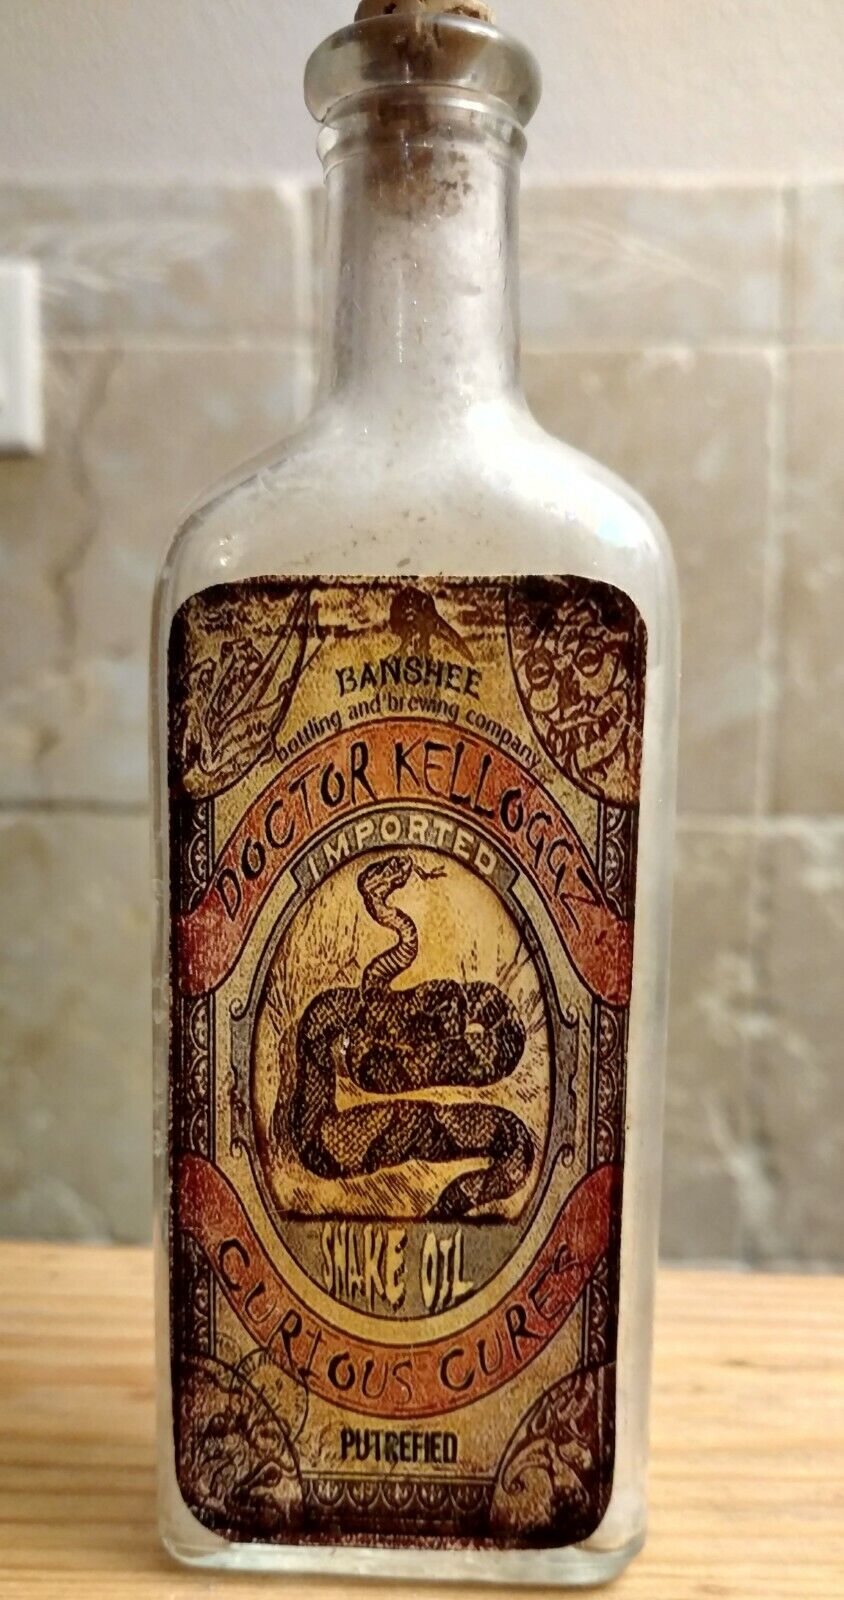 Vintage Medicine Hand Crafted Bottle, Snake Oil, Dr. Kelloggz (Copy)